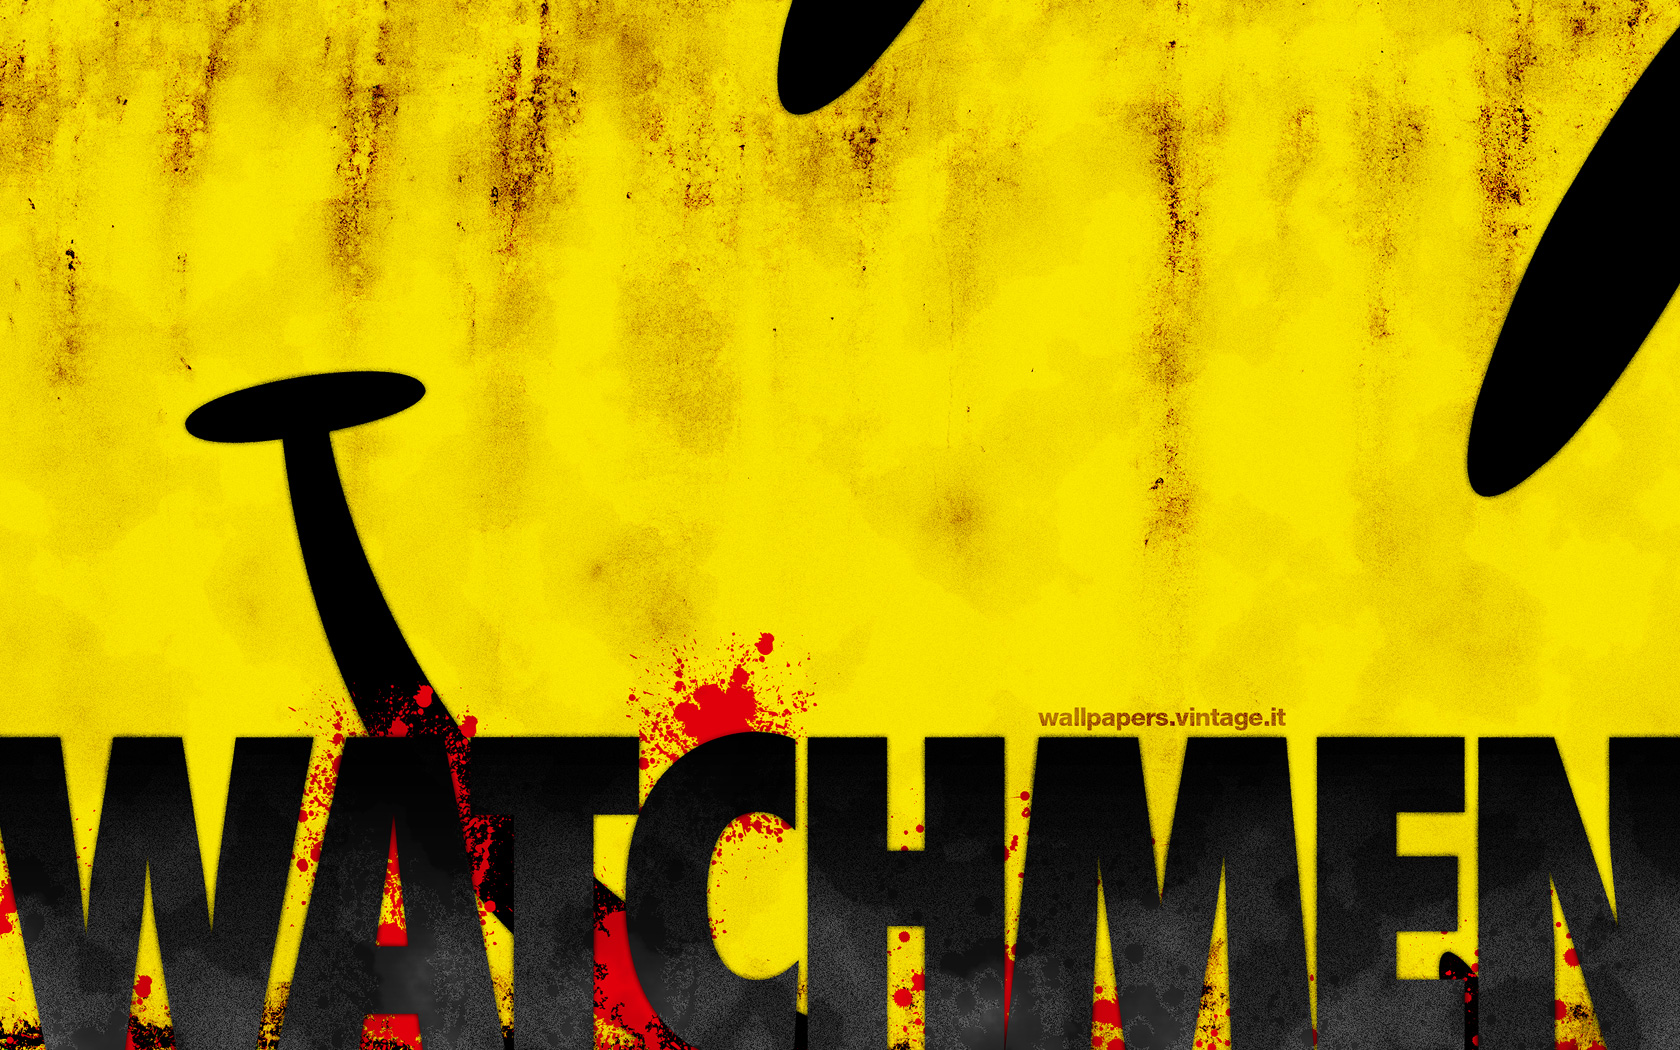 Watchmen Background